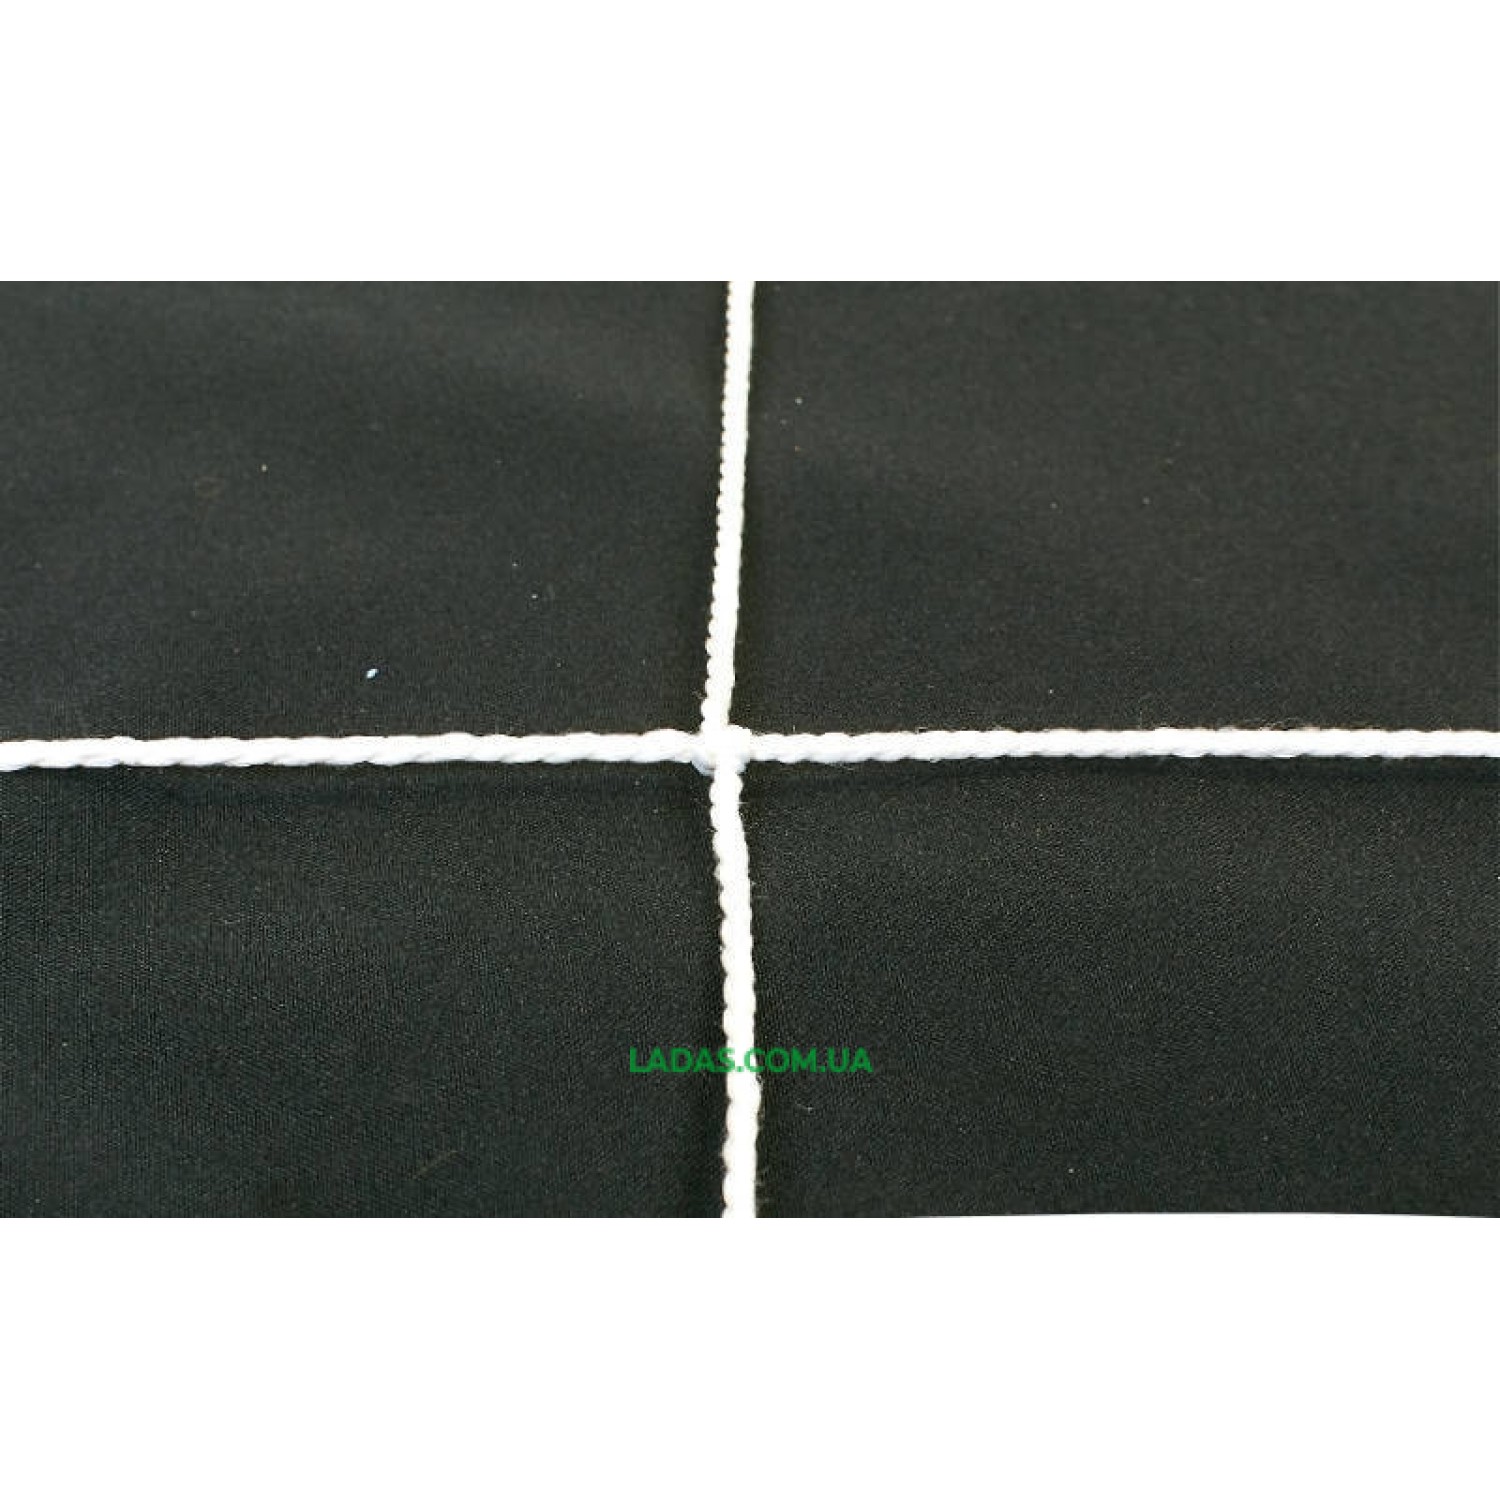 Сетка на ворота футбольные тренировочная узловая (2шт) (нить 2,5мм, ячейка 12x12см, р-р 7,4*2,5*2 м)